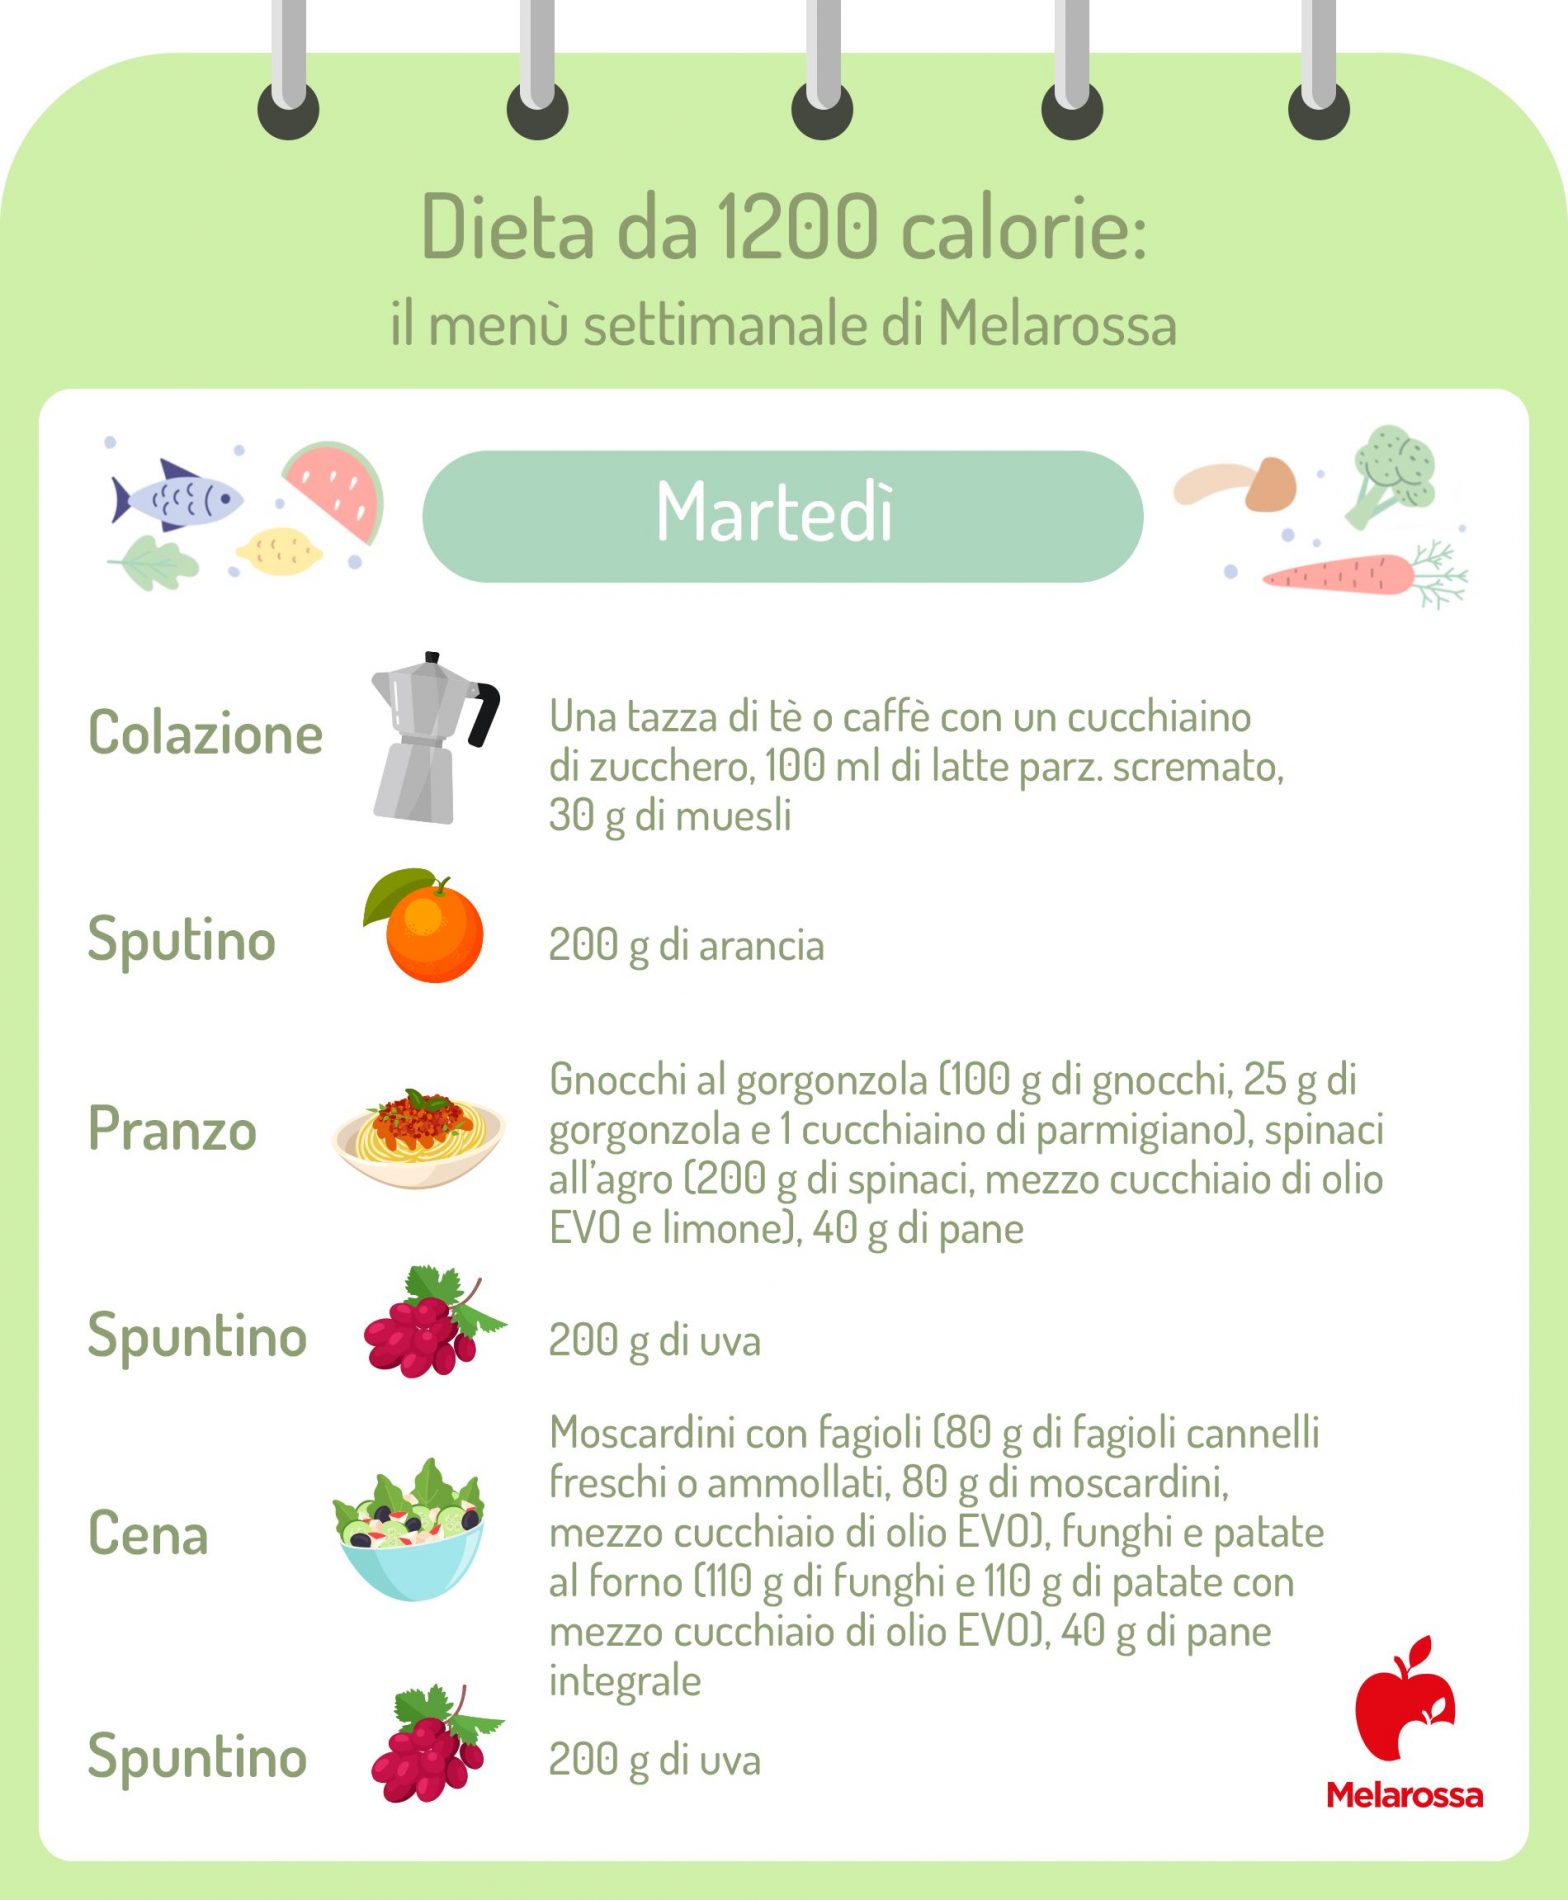 dieta 1200 calorie menu settimanale: martedì